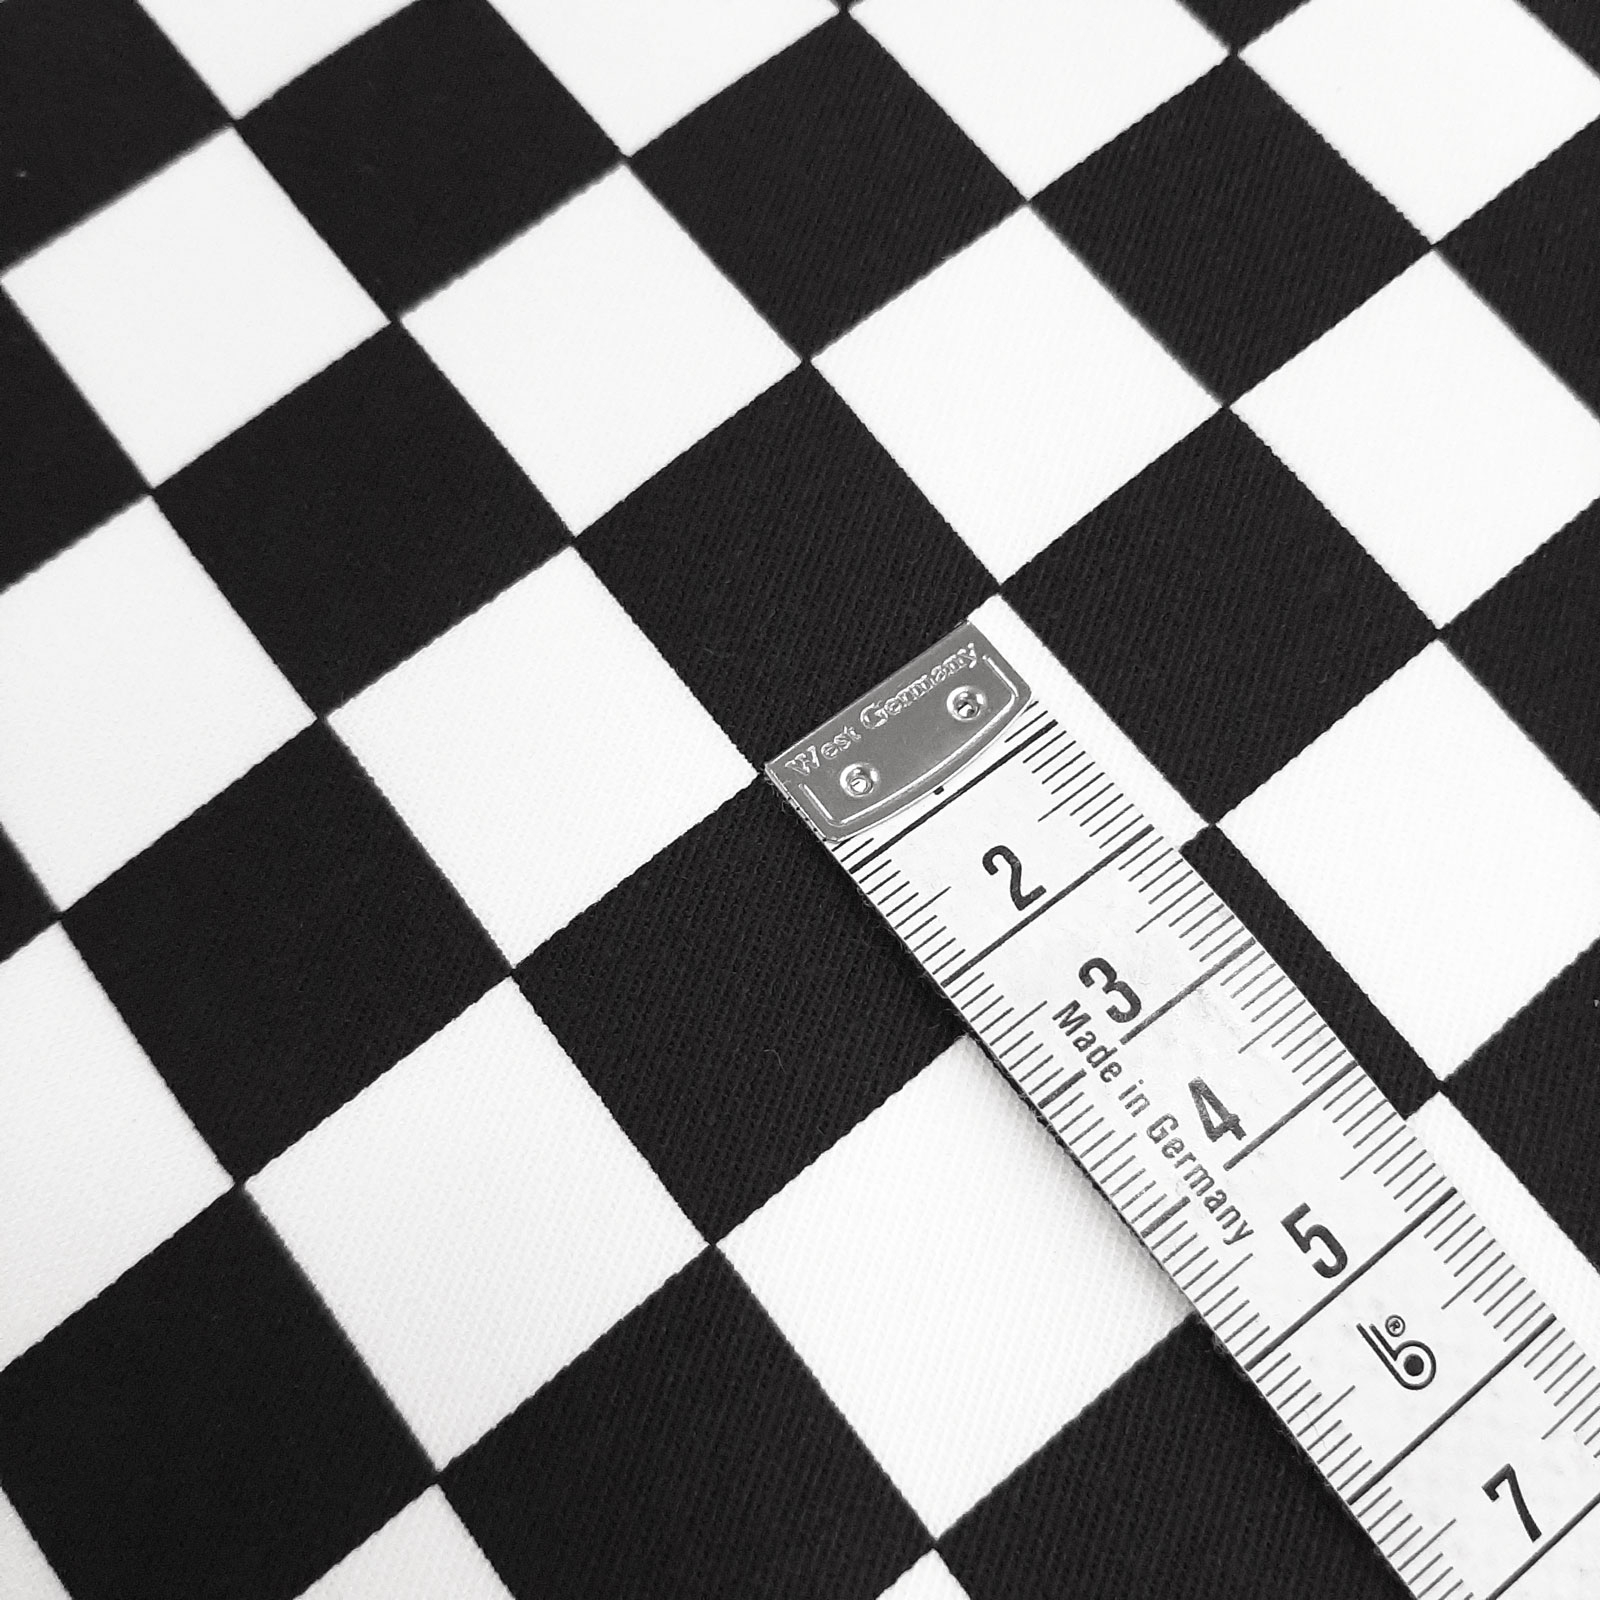 Tessuto stampato Quadro - a quadretti - a scacchi bianchi e neri